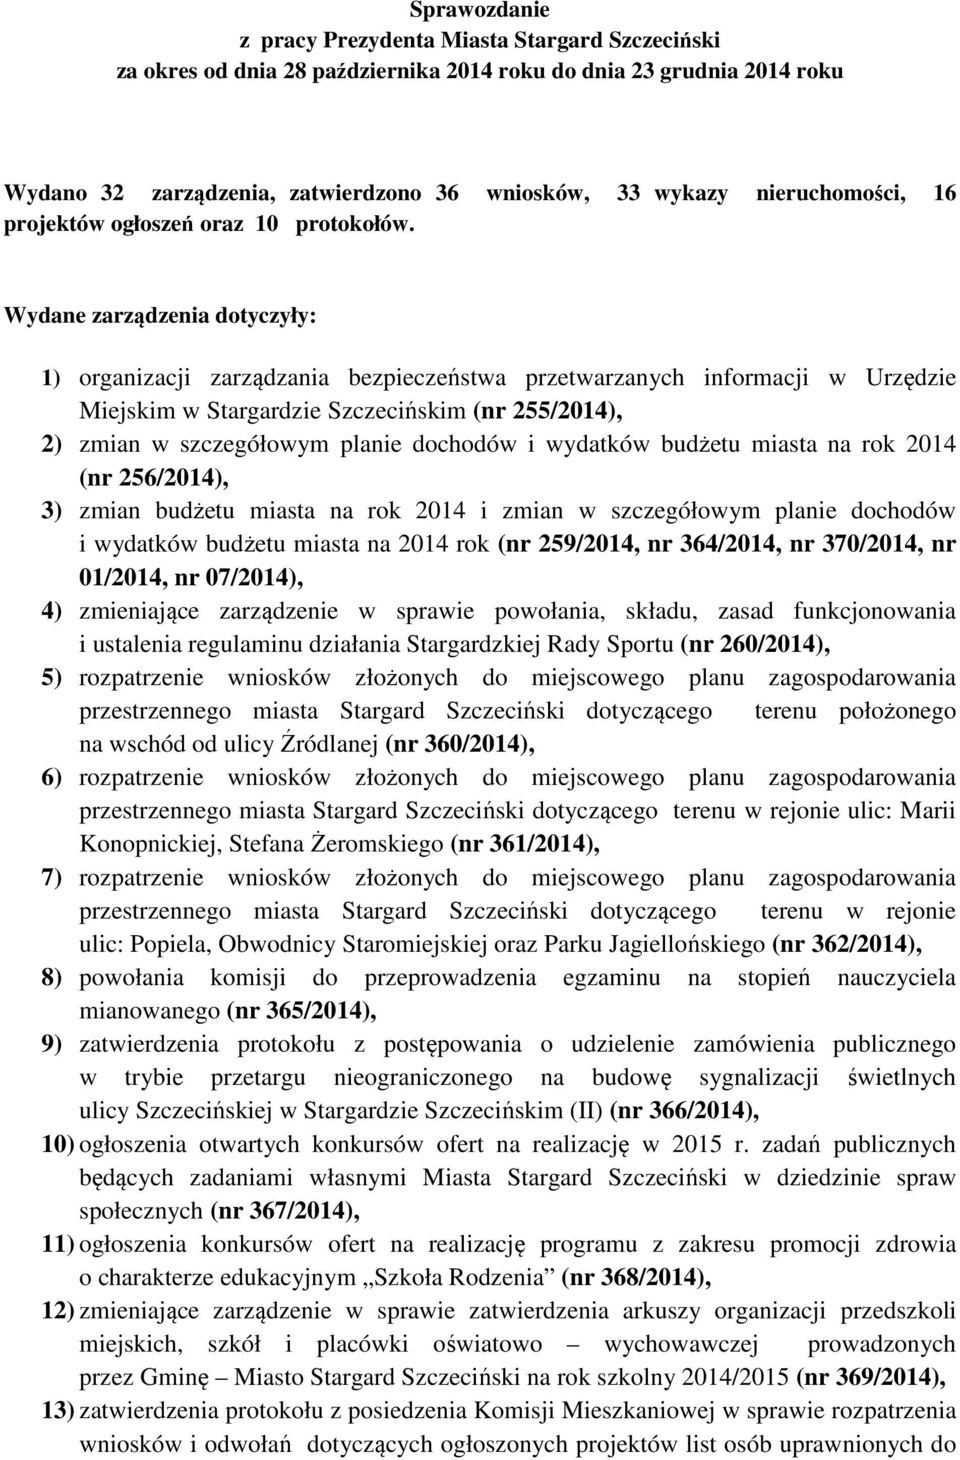 Wydane zarządzenia dotyczyły: 1) organizacji zarządzania bezpieczeństwa przetwarzanych informacji w Urzędzie Miejskim w Stargardzie Szczecińskim (nr 255/2014), 2) zmian w szczegółowym planie dochodów